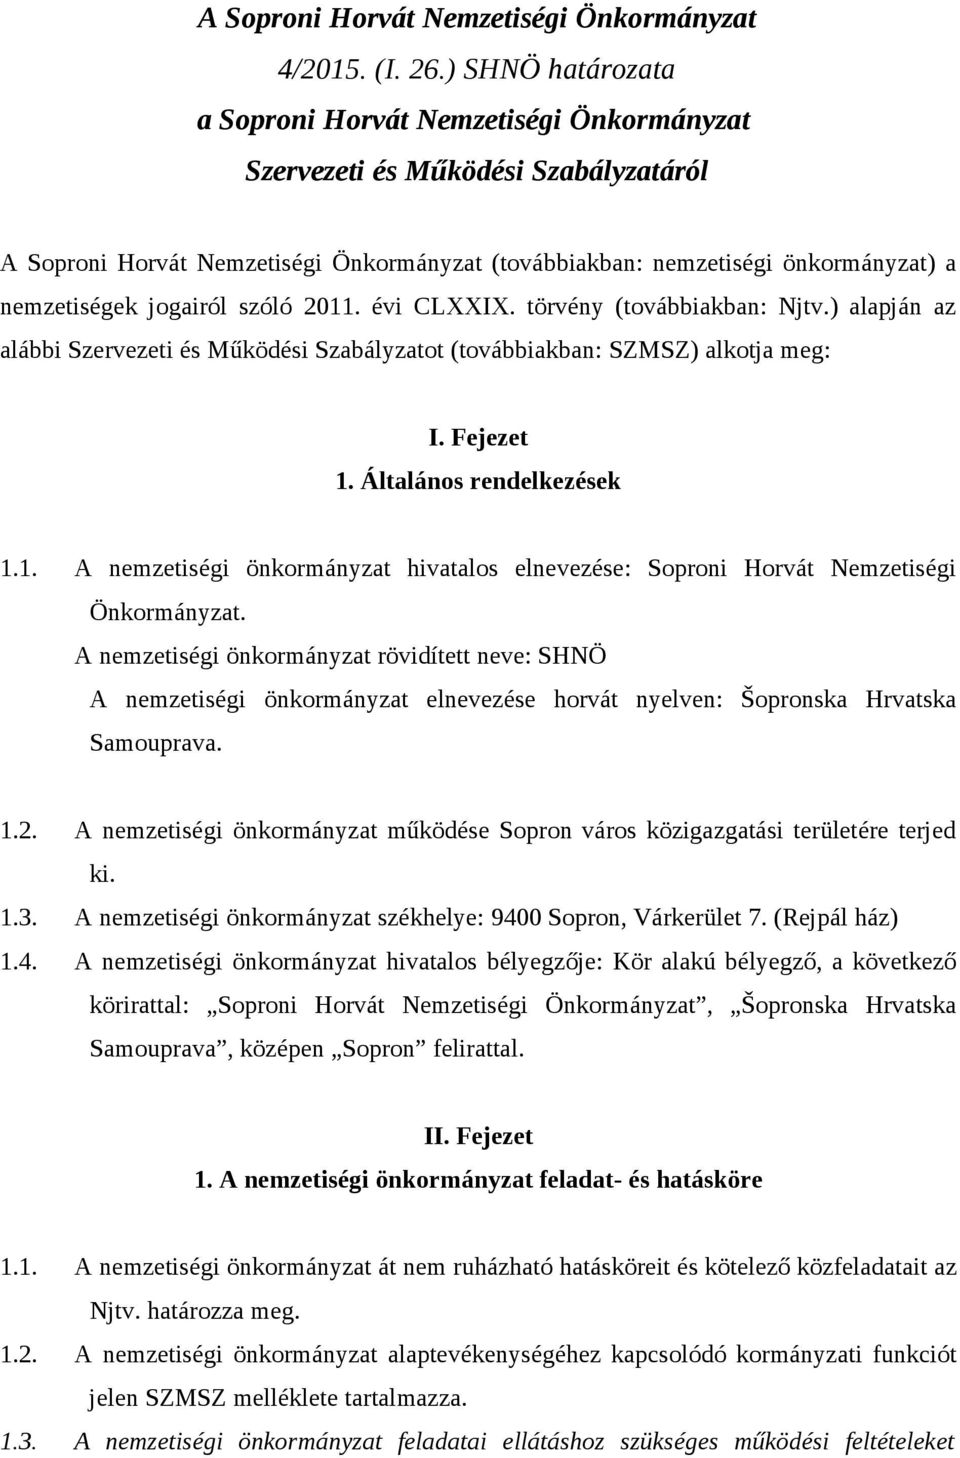 jogairól szóló 2011. évi CLXXIX. törvény (továbbiakban: Njtv.) alapján az alábbi Szervezeti és Működési Szabályzatot (továbbiakban: SZMSZ) alkotja meg: I. Fejezet 1. Általános rendelkezések 1.1. A nemzetiségi önkormányzat hivatalos elnevezése: Soproni Horvát Nemzetiségi Önkormányzat.